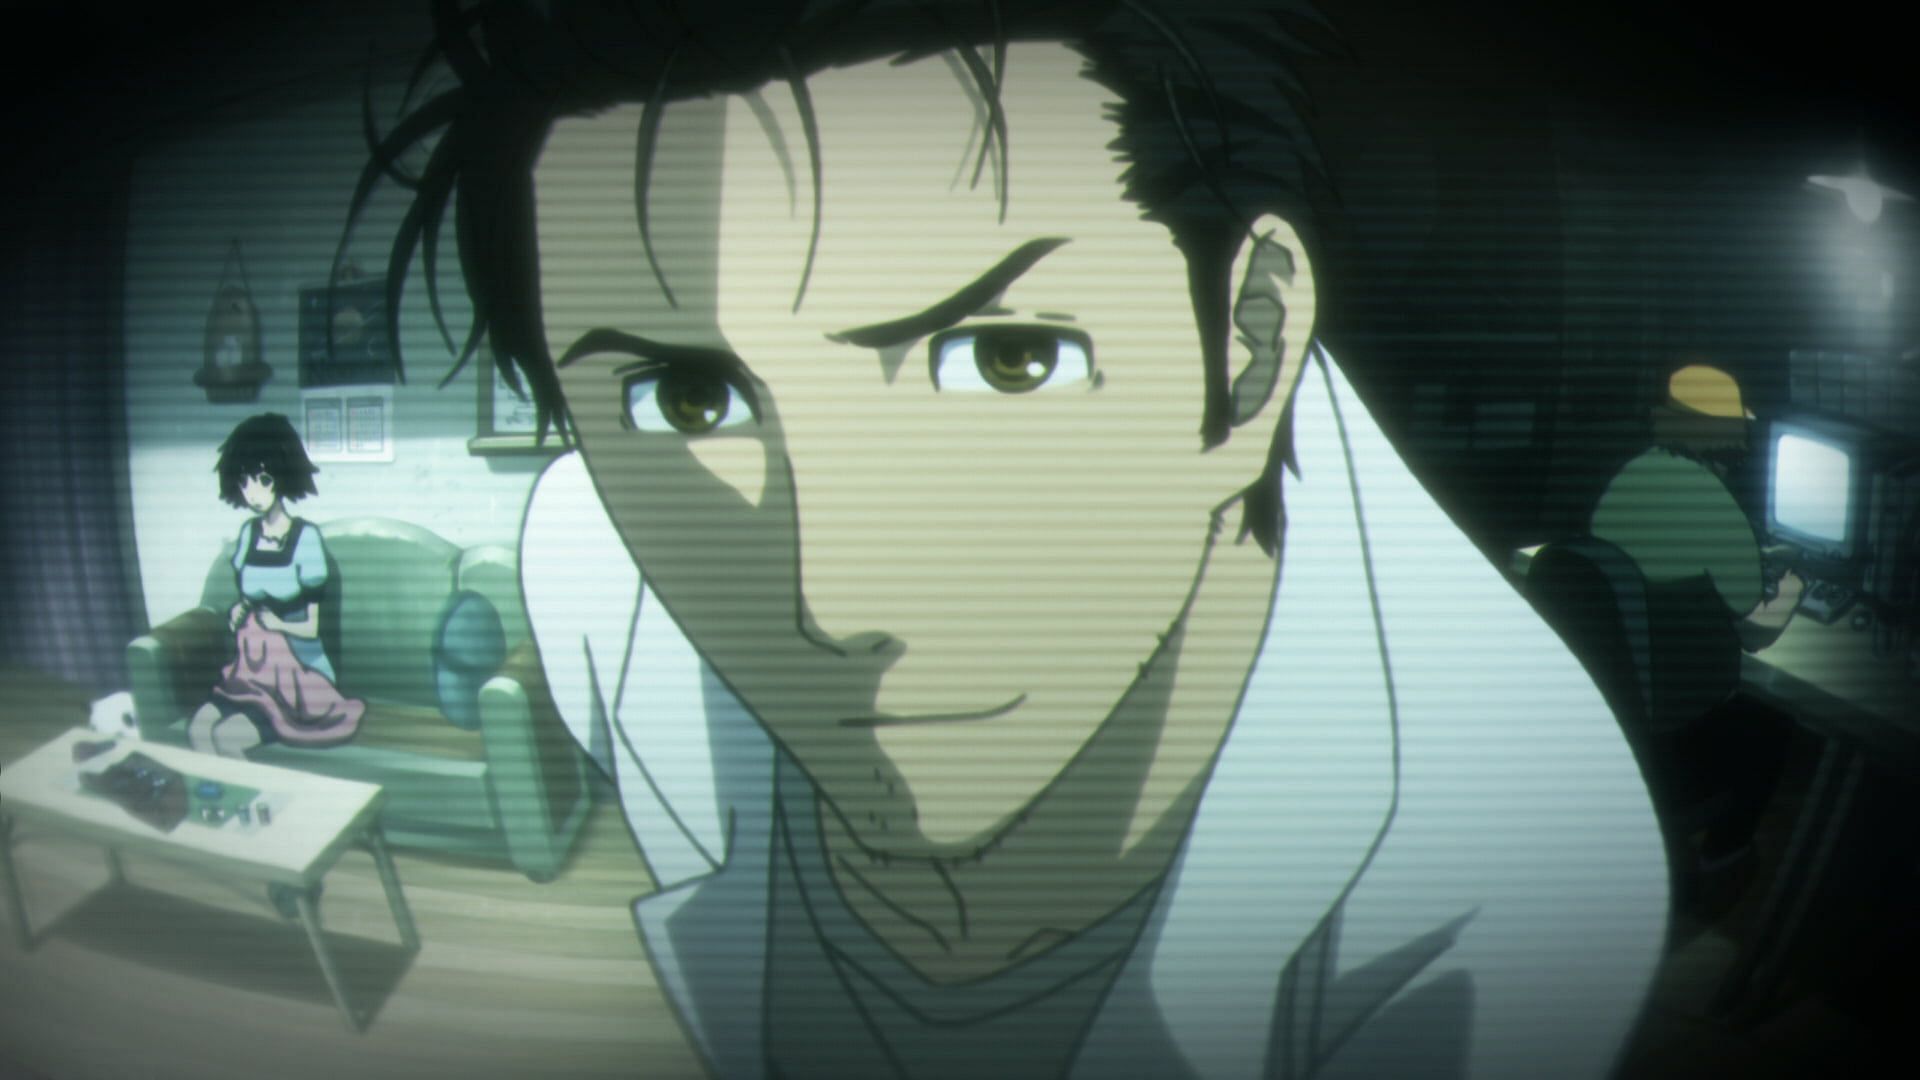 Rintaro Okabe as seen in the Steins;Gate anime series (Image via White Fox Studio)